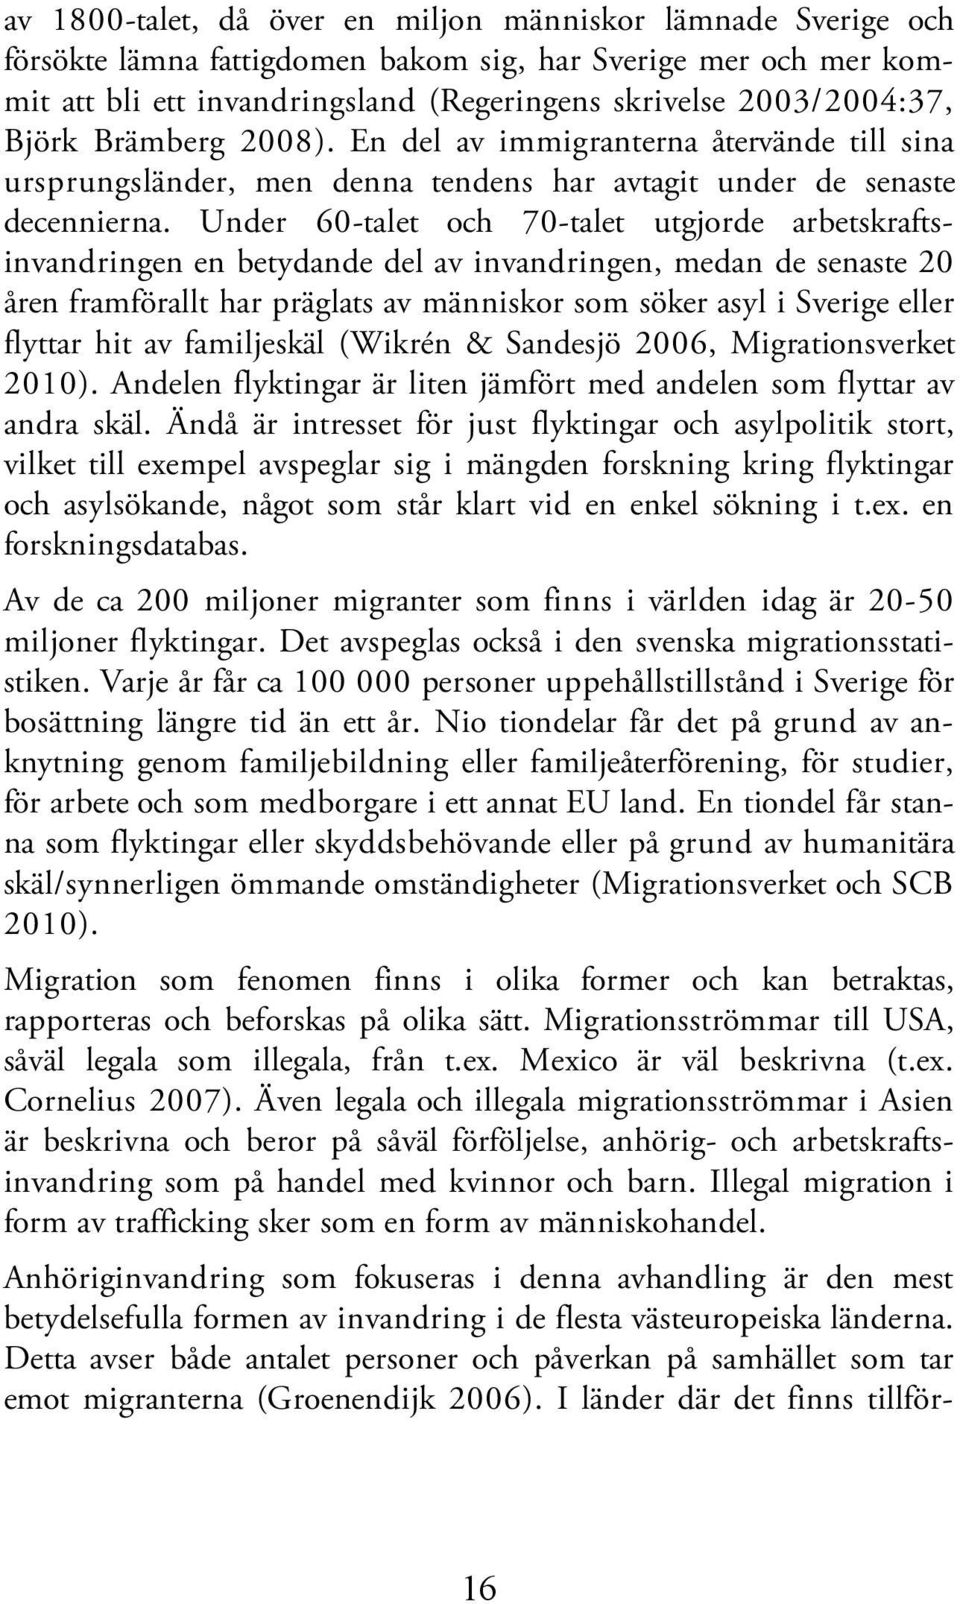 Under 60-talet och 70-talet utgjorde arbetskraftsinvandringen en betydande del av invandringen, medan de senaste 20 åren framförallt har präglats av människor som söker asyl i Sverige eller flyttar